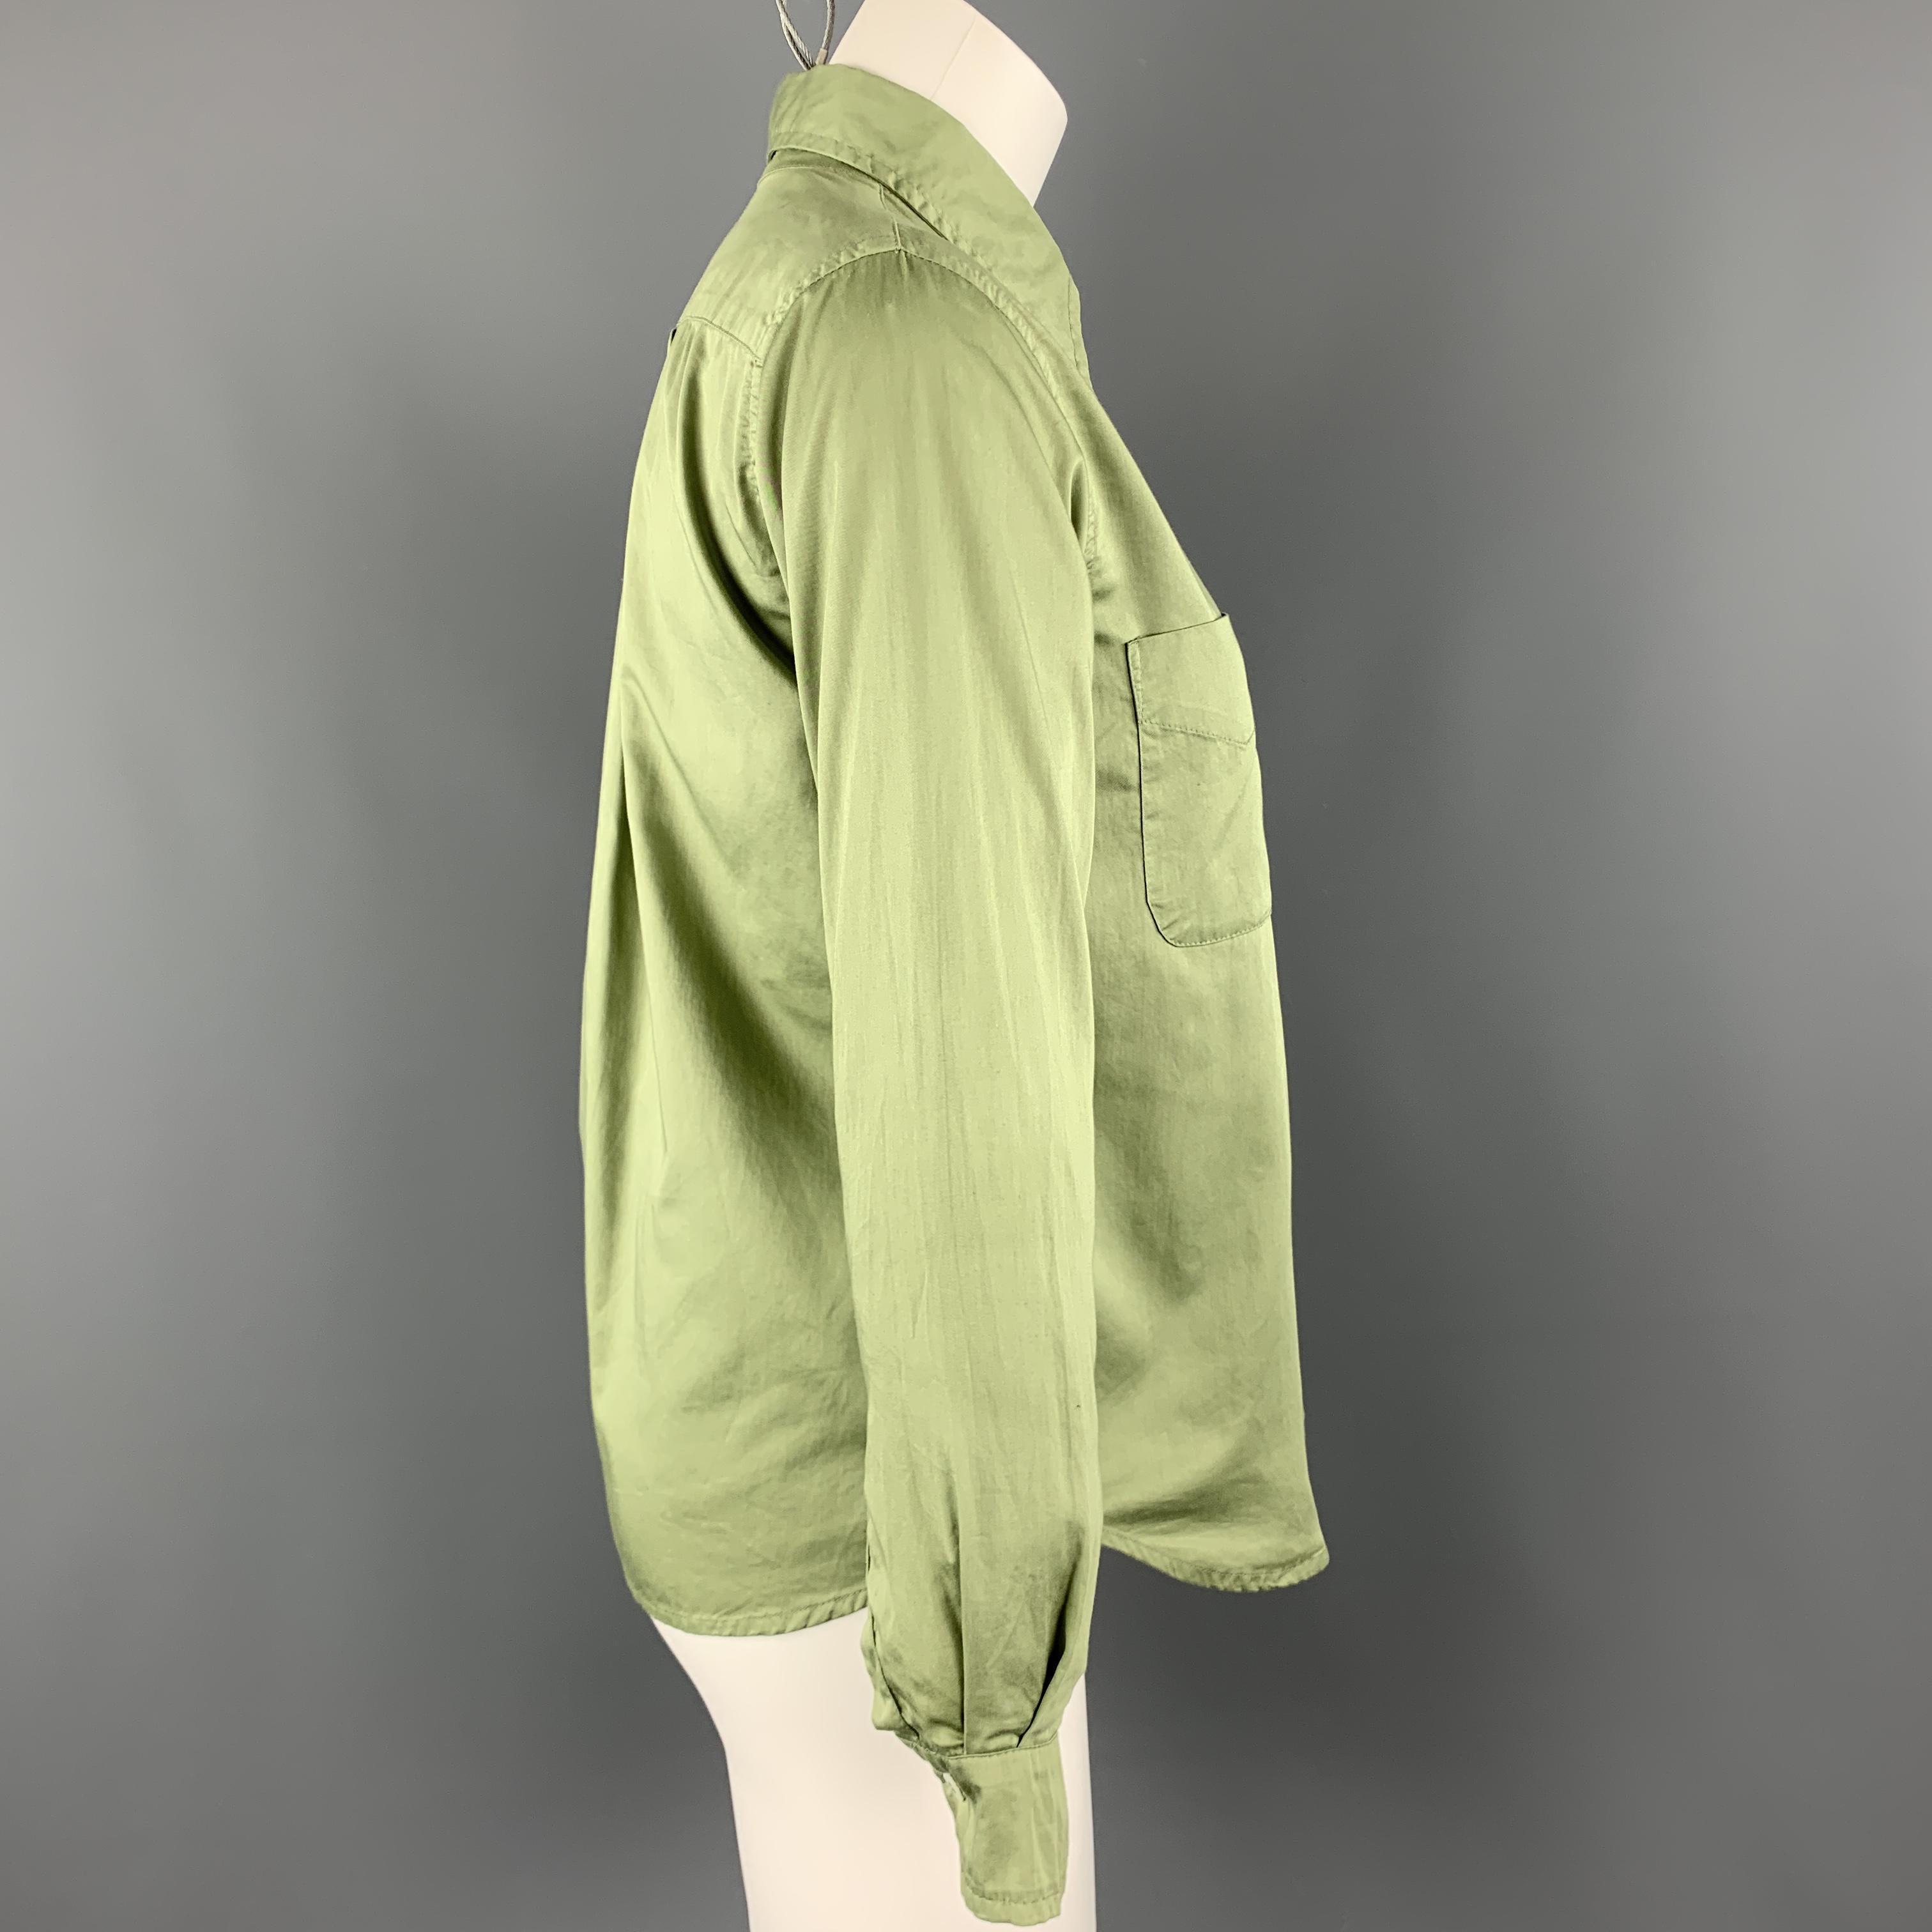 cotton green blouse